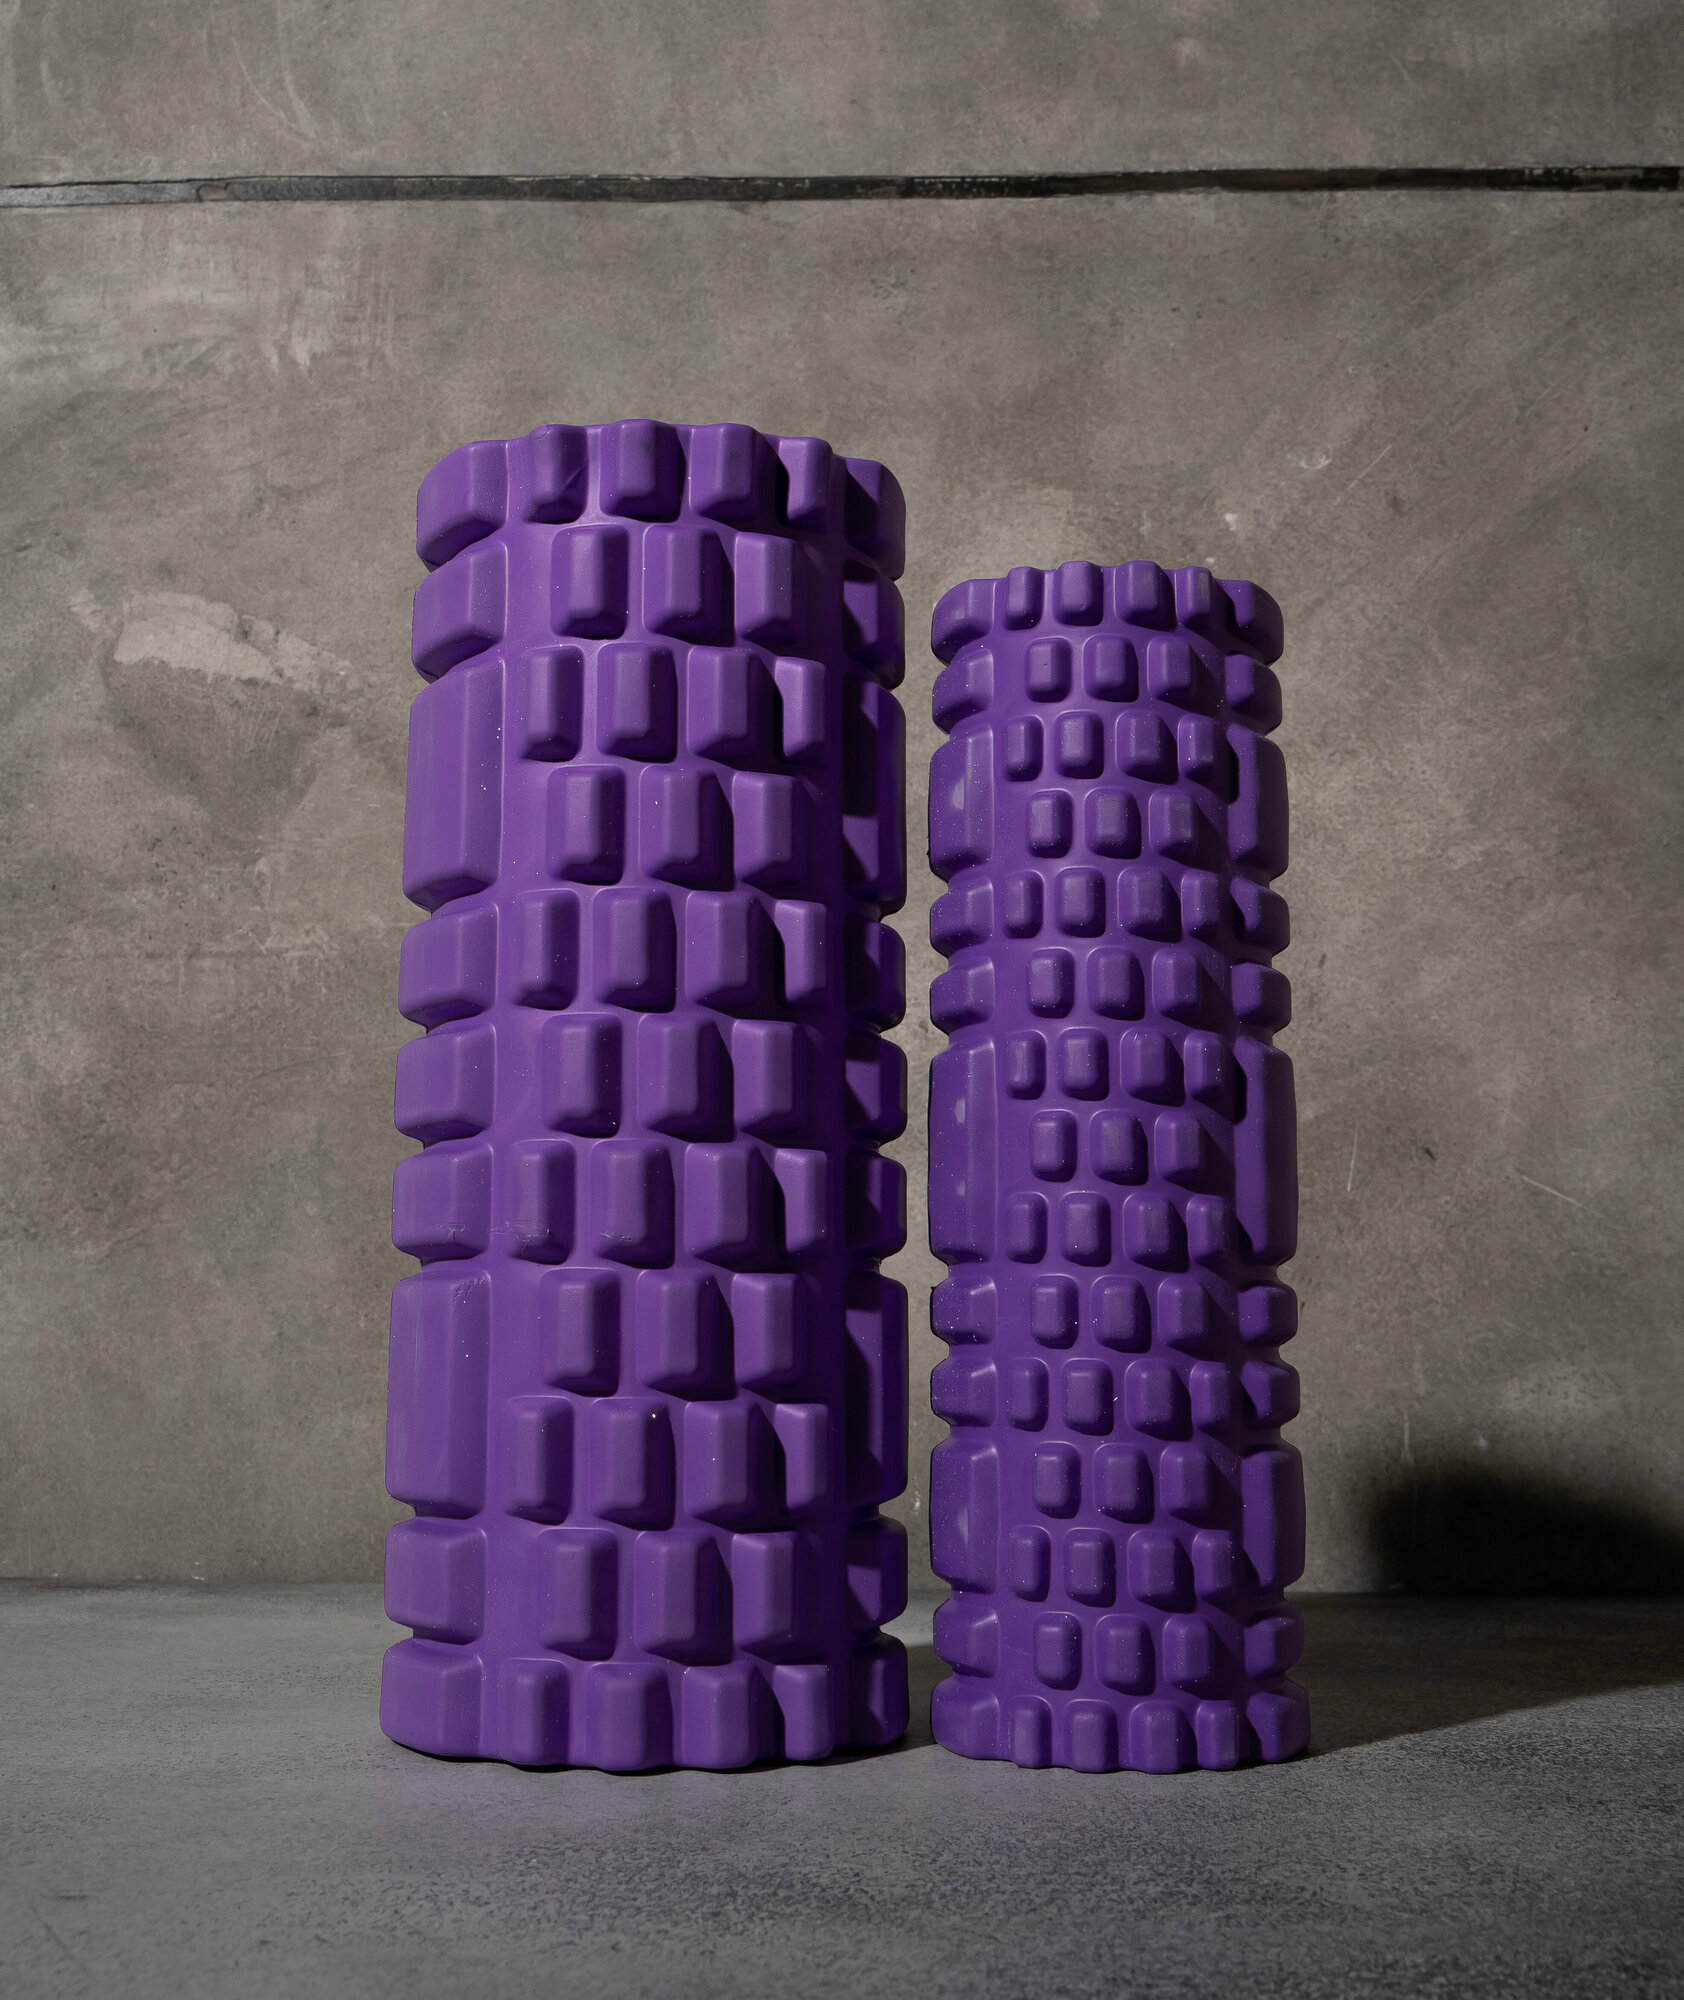 Роллер Sangh, для йоги, 2 в 1, размеры 33 х 13 см и 30 х 10 см, цвет фиолетовый